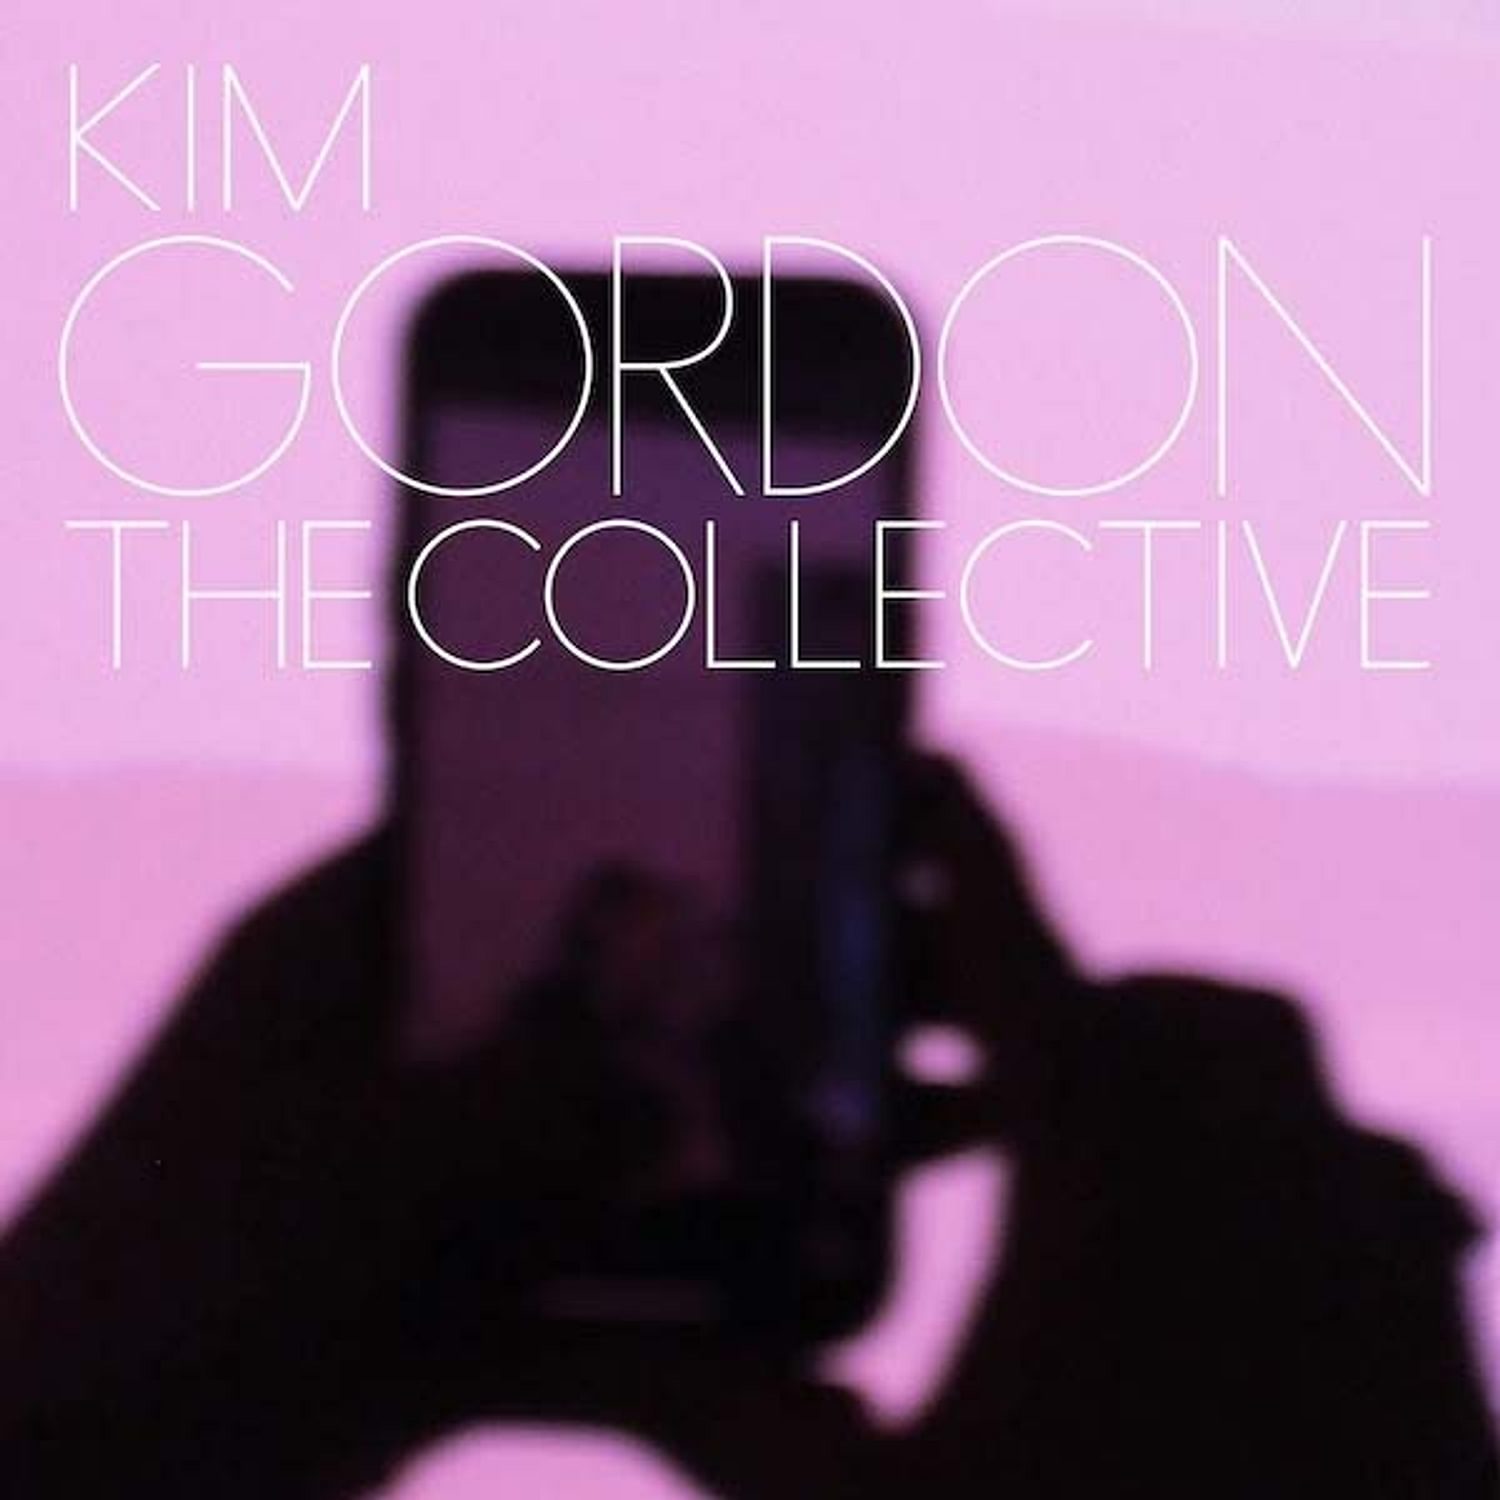 <p><strong>Kim Gordon </strong>- The Collective</p>